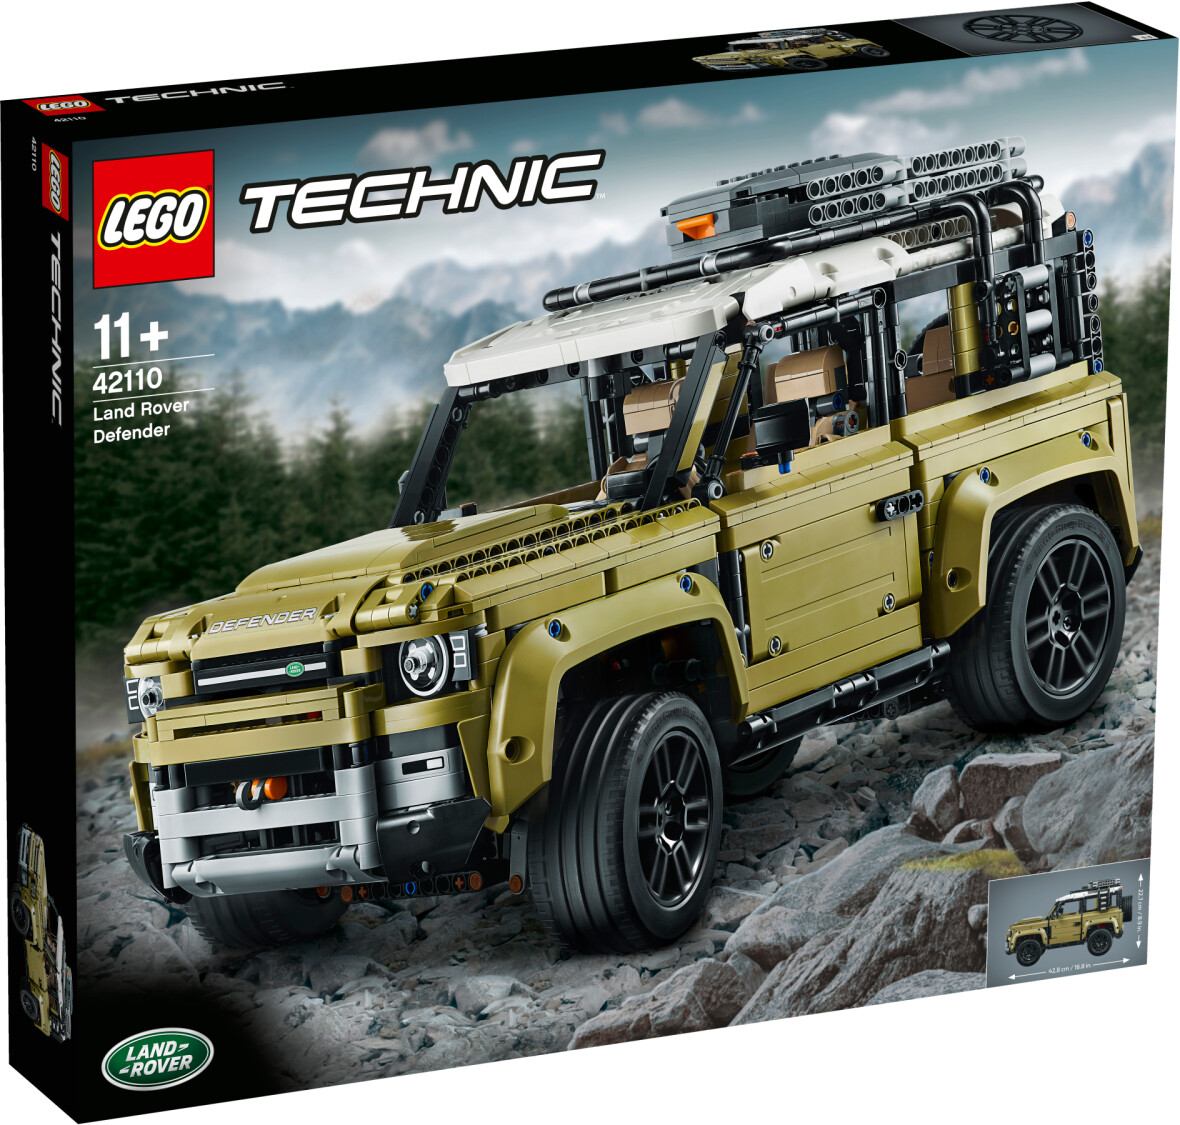 Bild zu Lego Technic Land Rover Defender für 119,90€ (Vergleich: 161,26€)